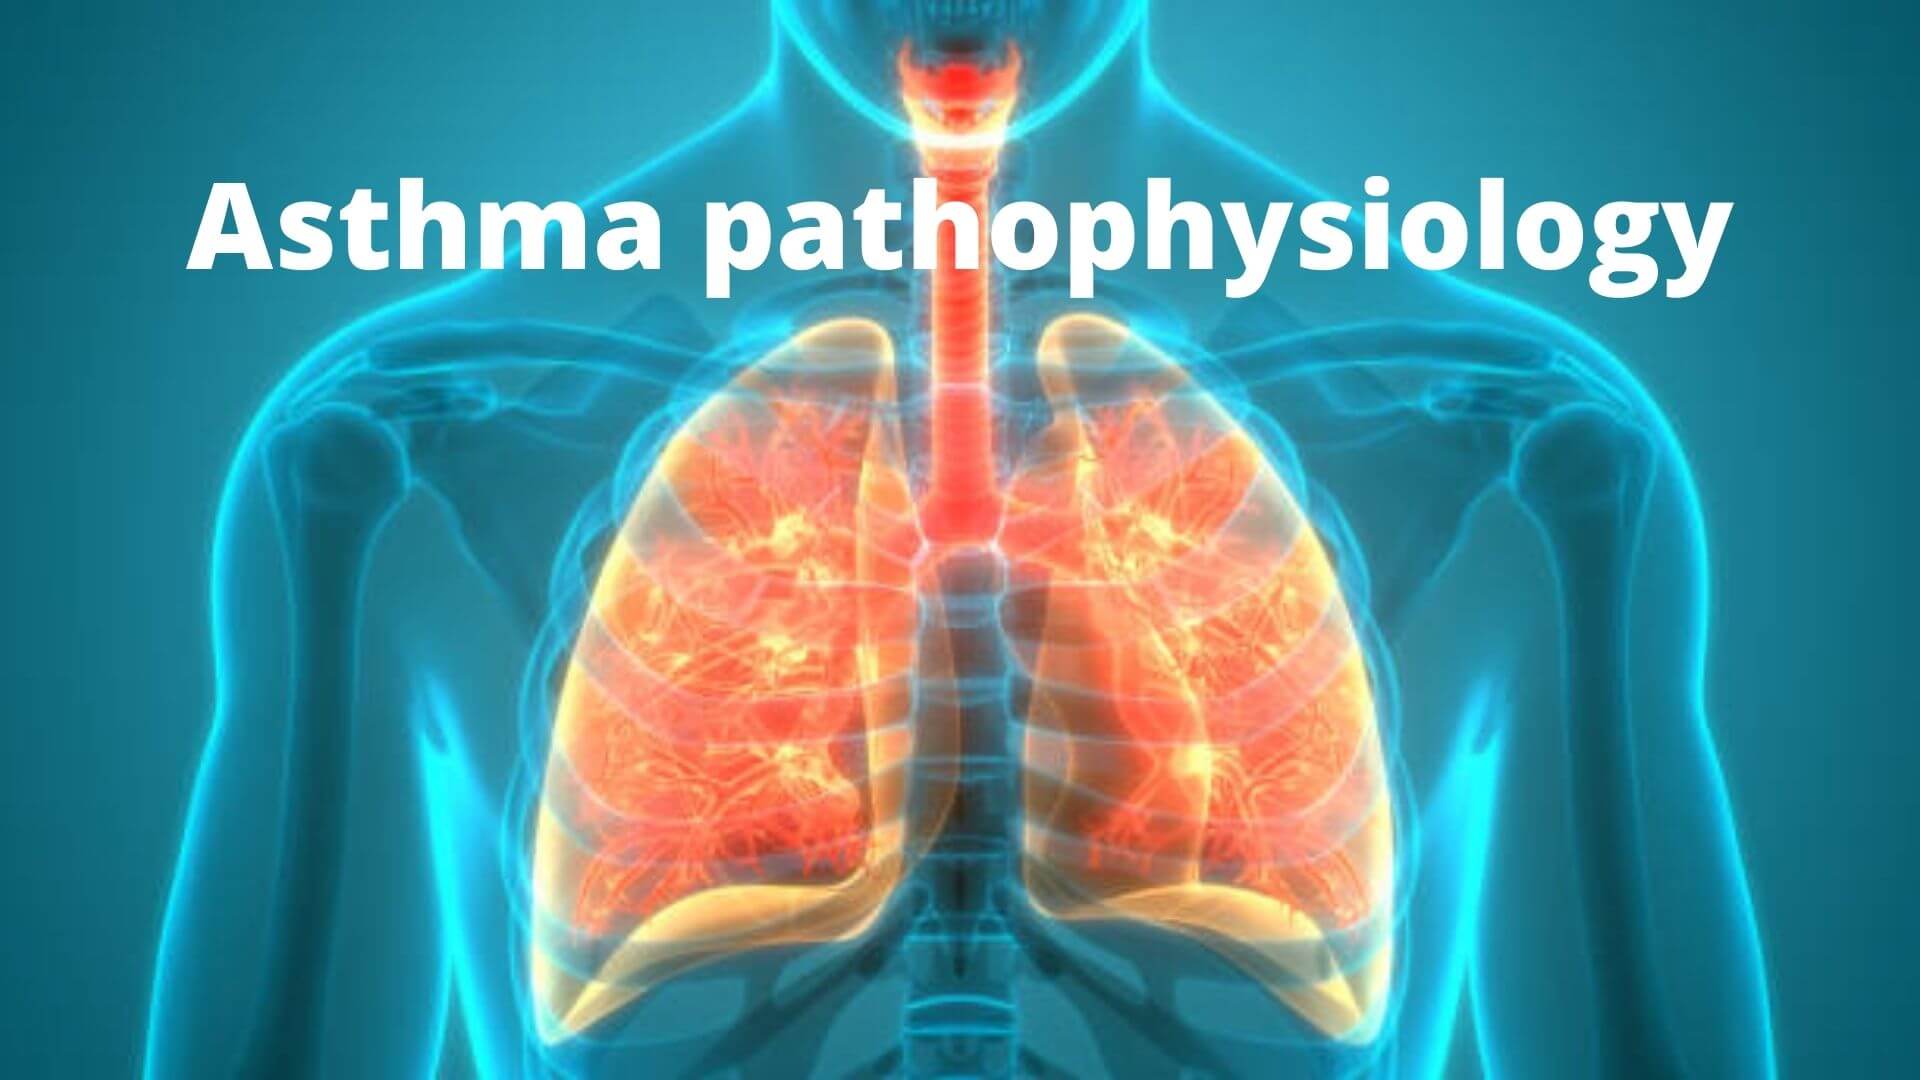 Asthma pathophysiology